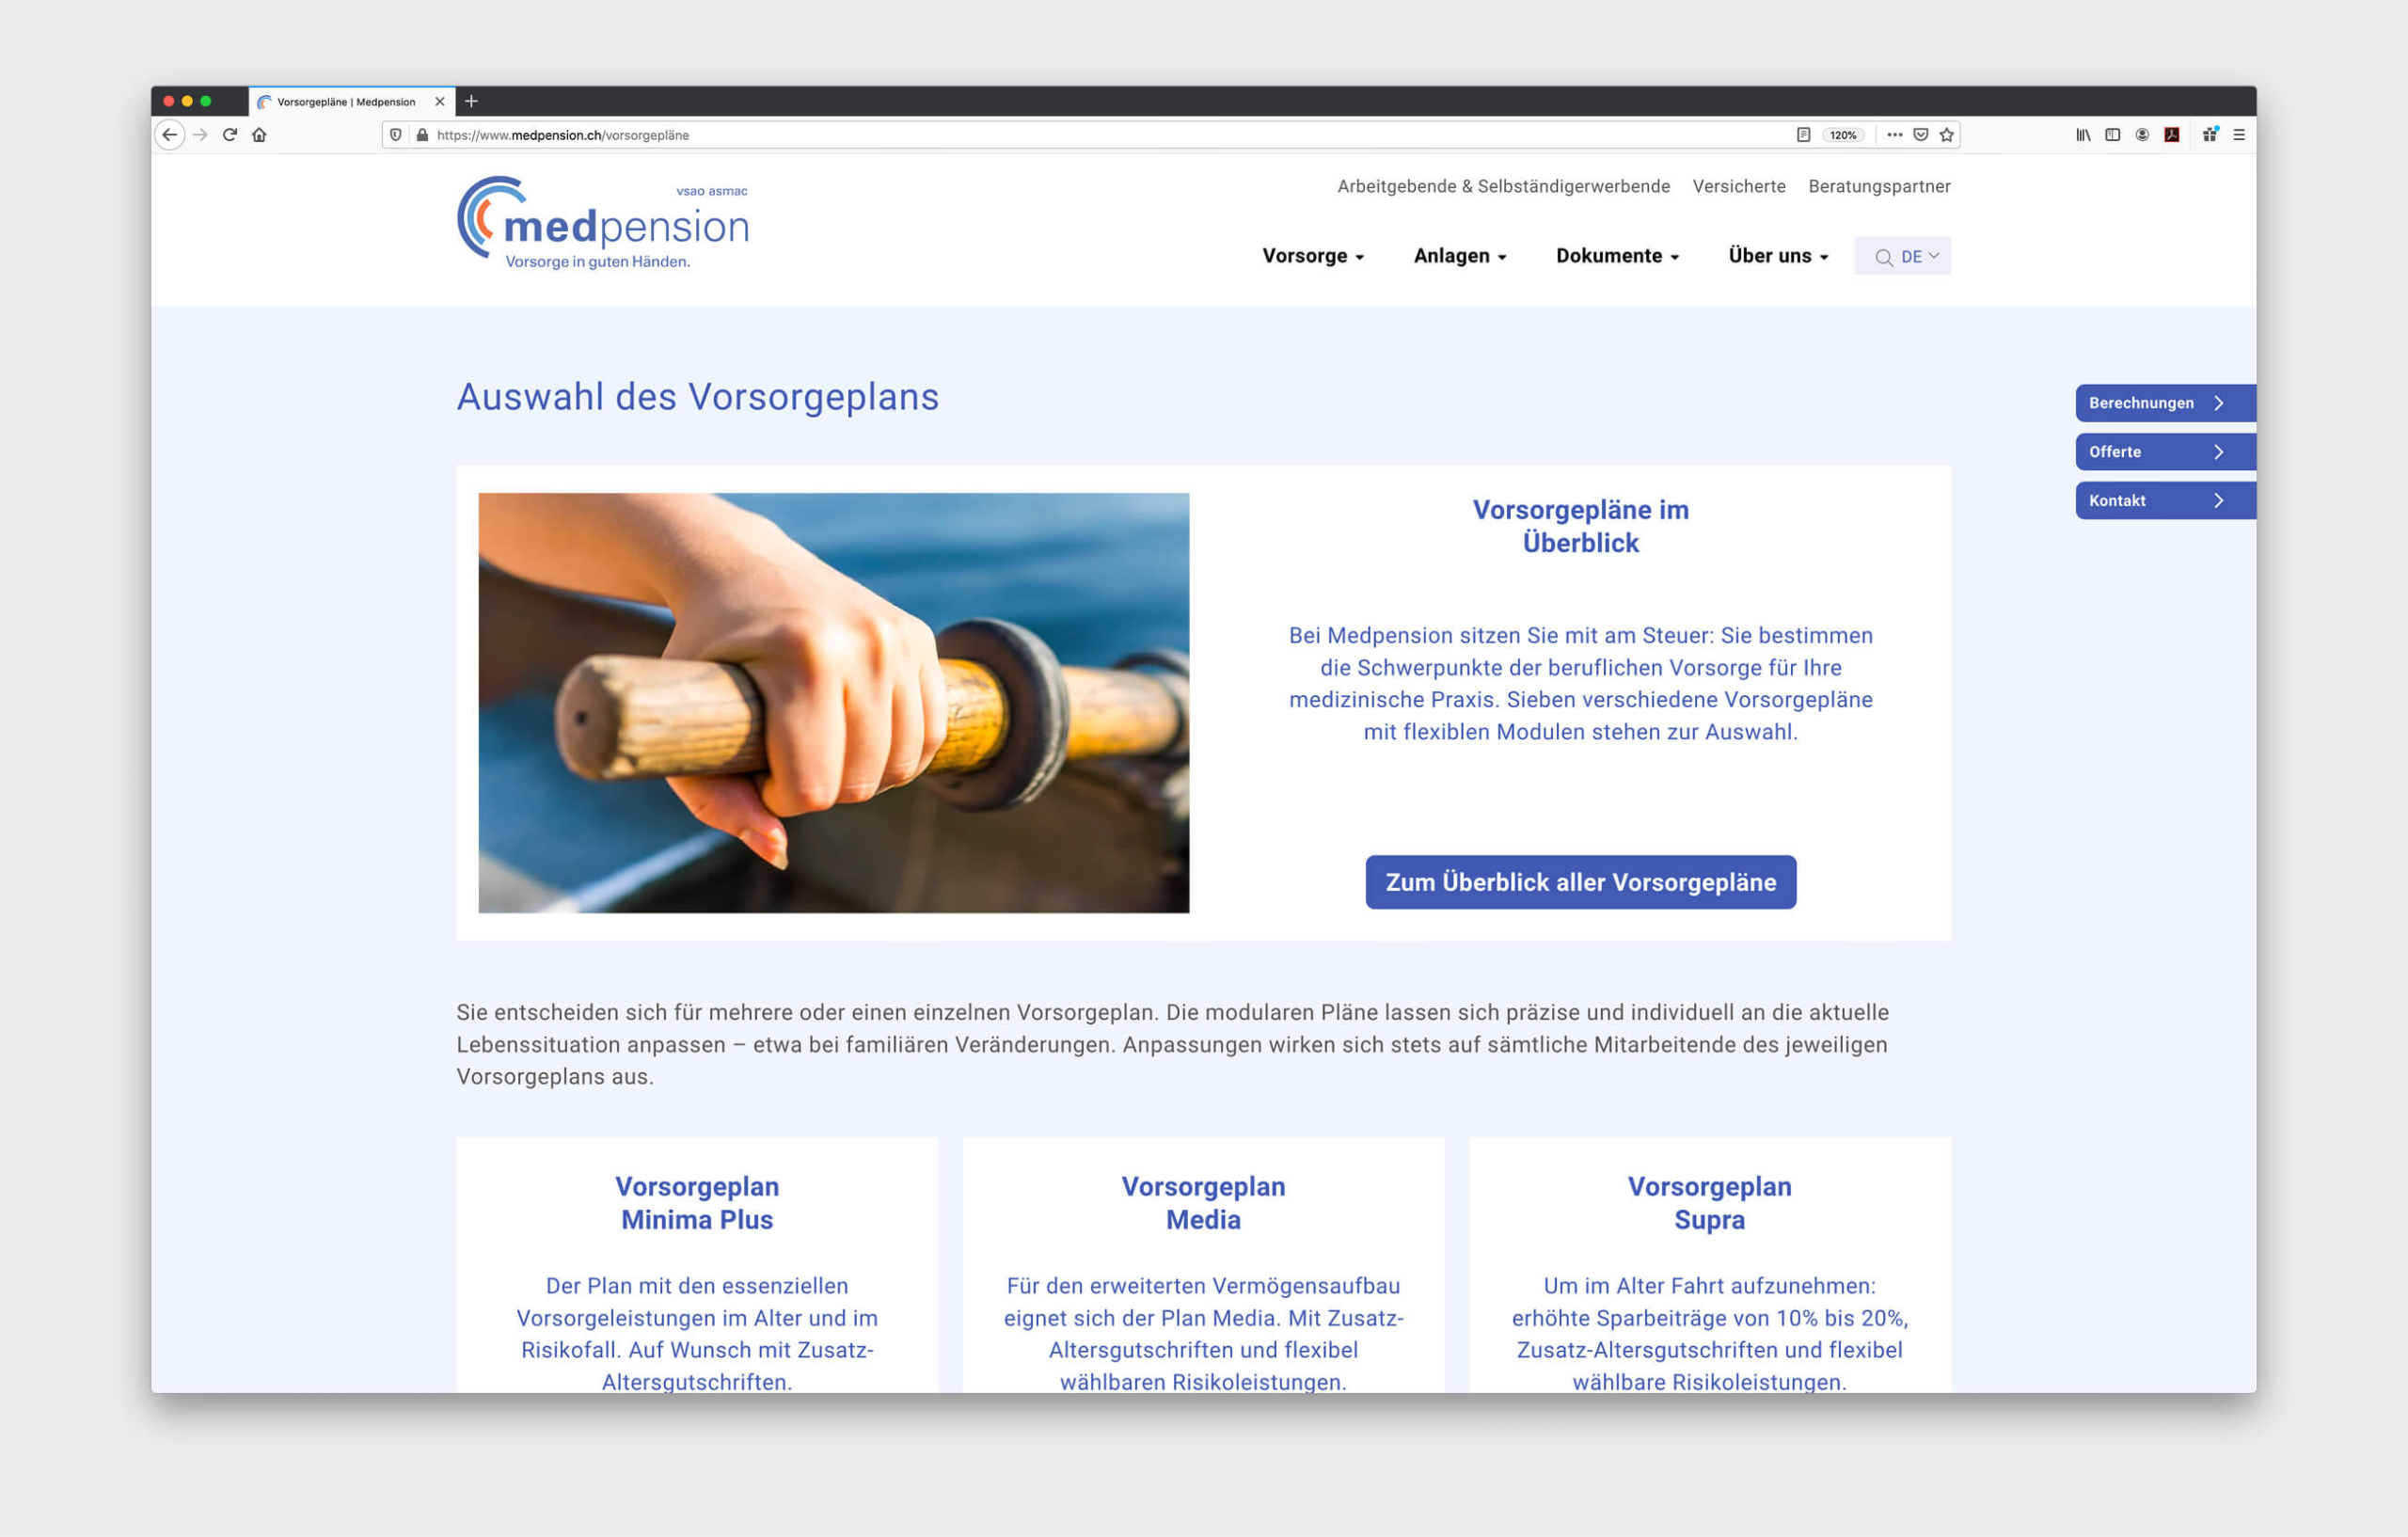 Medpension: Neue Corporate Identity für die Pensionskasse - neue Website Detail